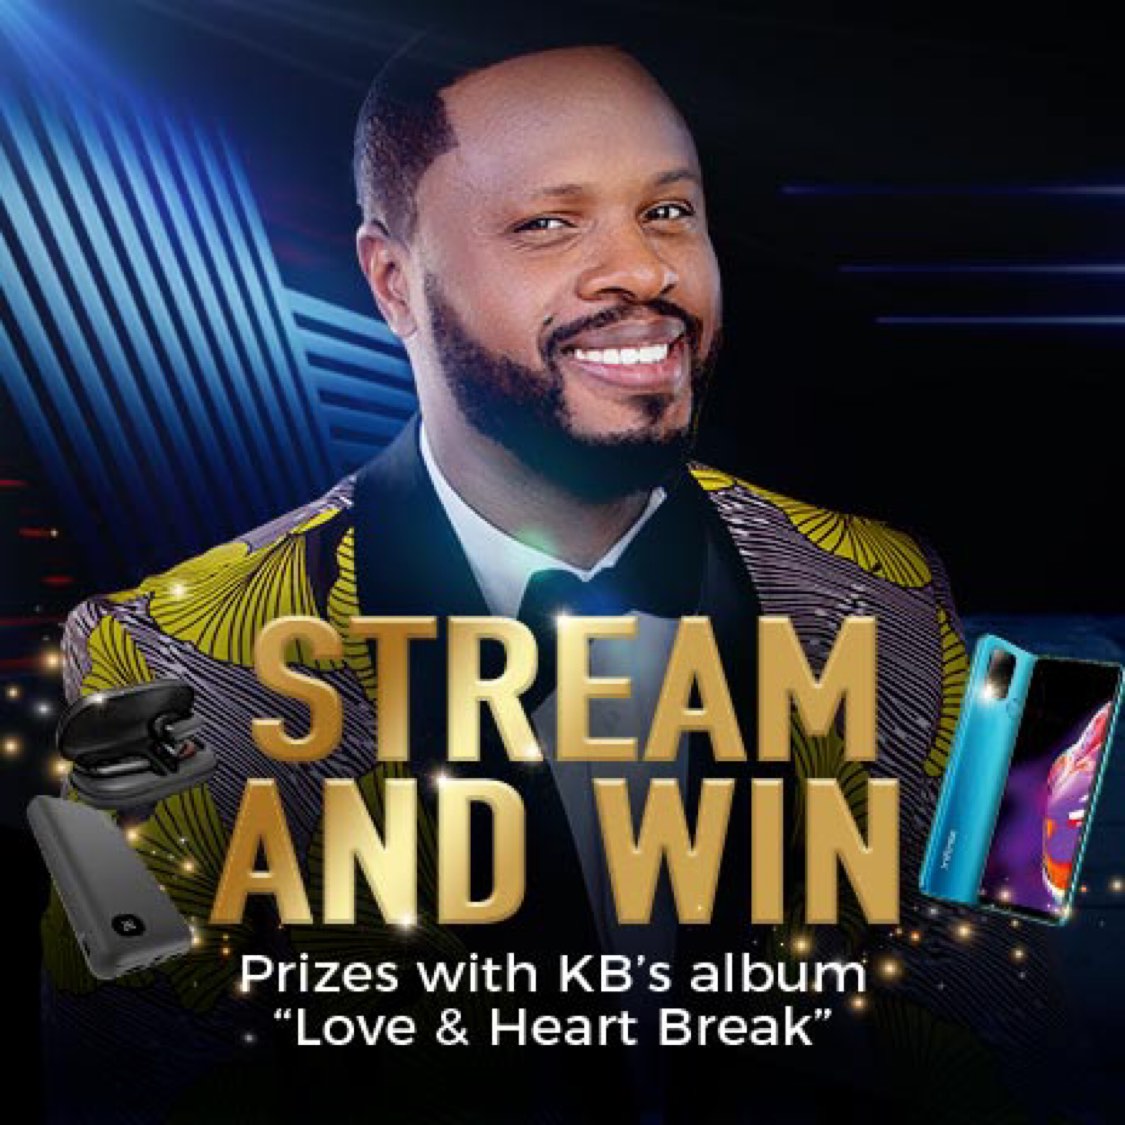 Stream my new album "Love & Heart Break" and Win the Infinix Phone!!!